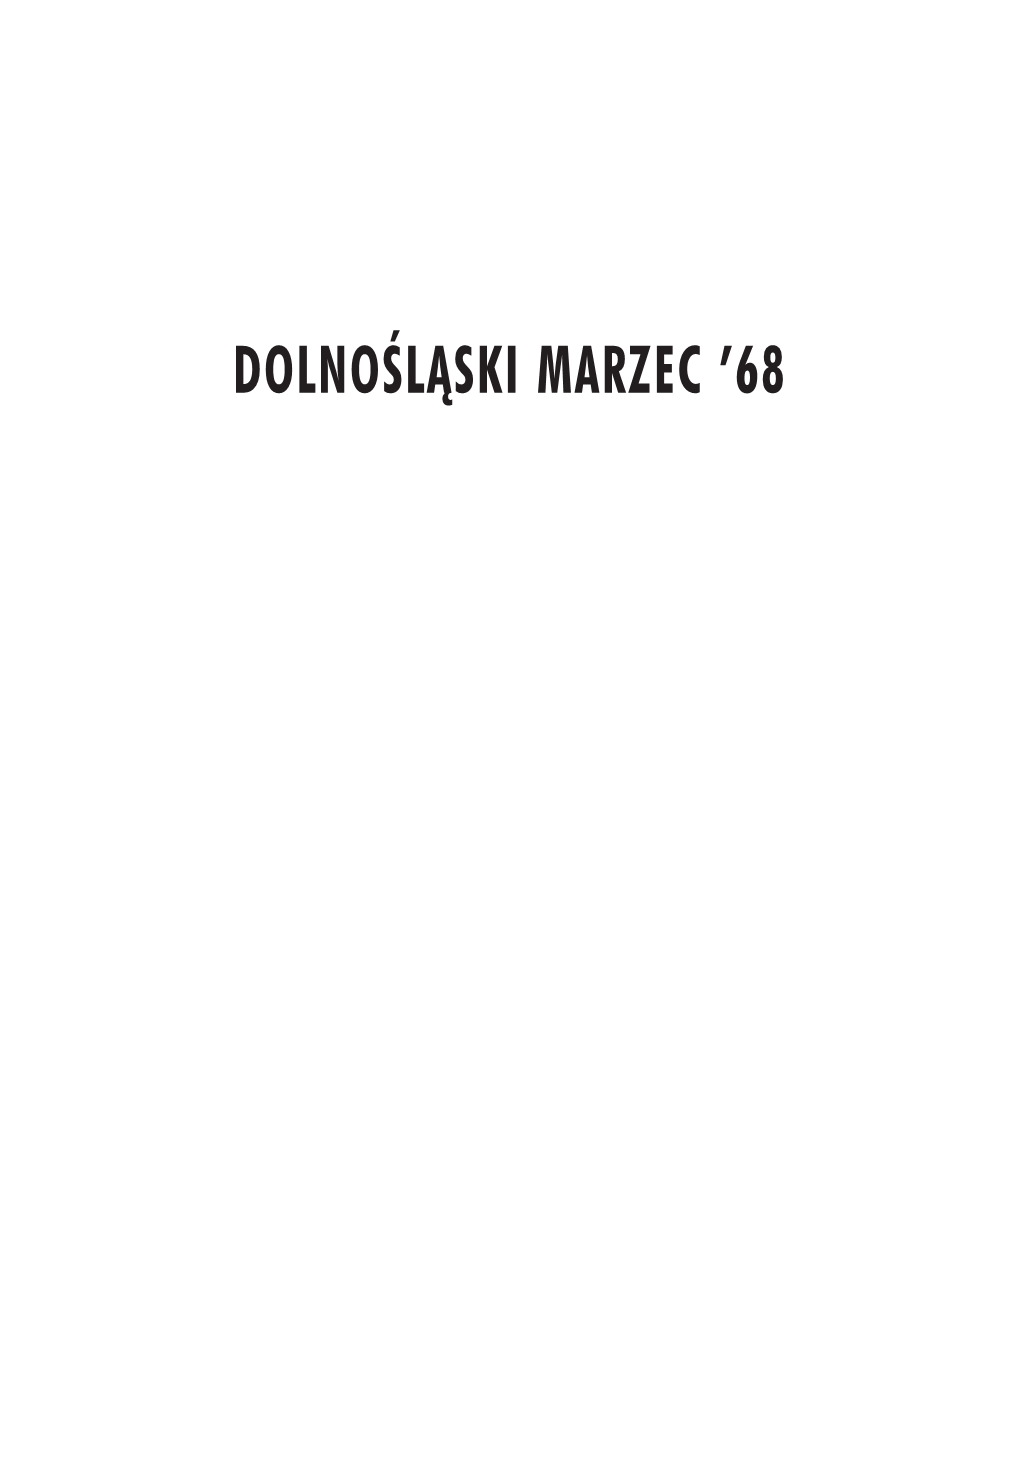 DOLNOÂLÑSKI MARZEC ’68 Tytul Suleja.Qxd 12/4/06 11:13 Page 2